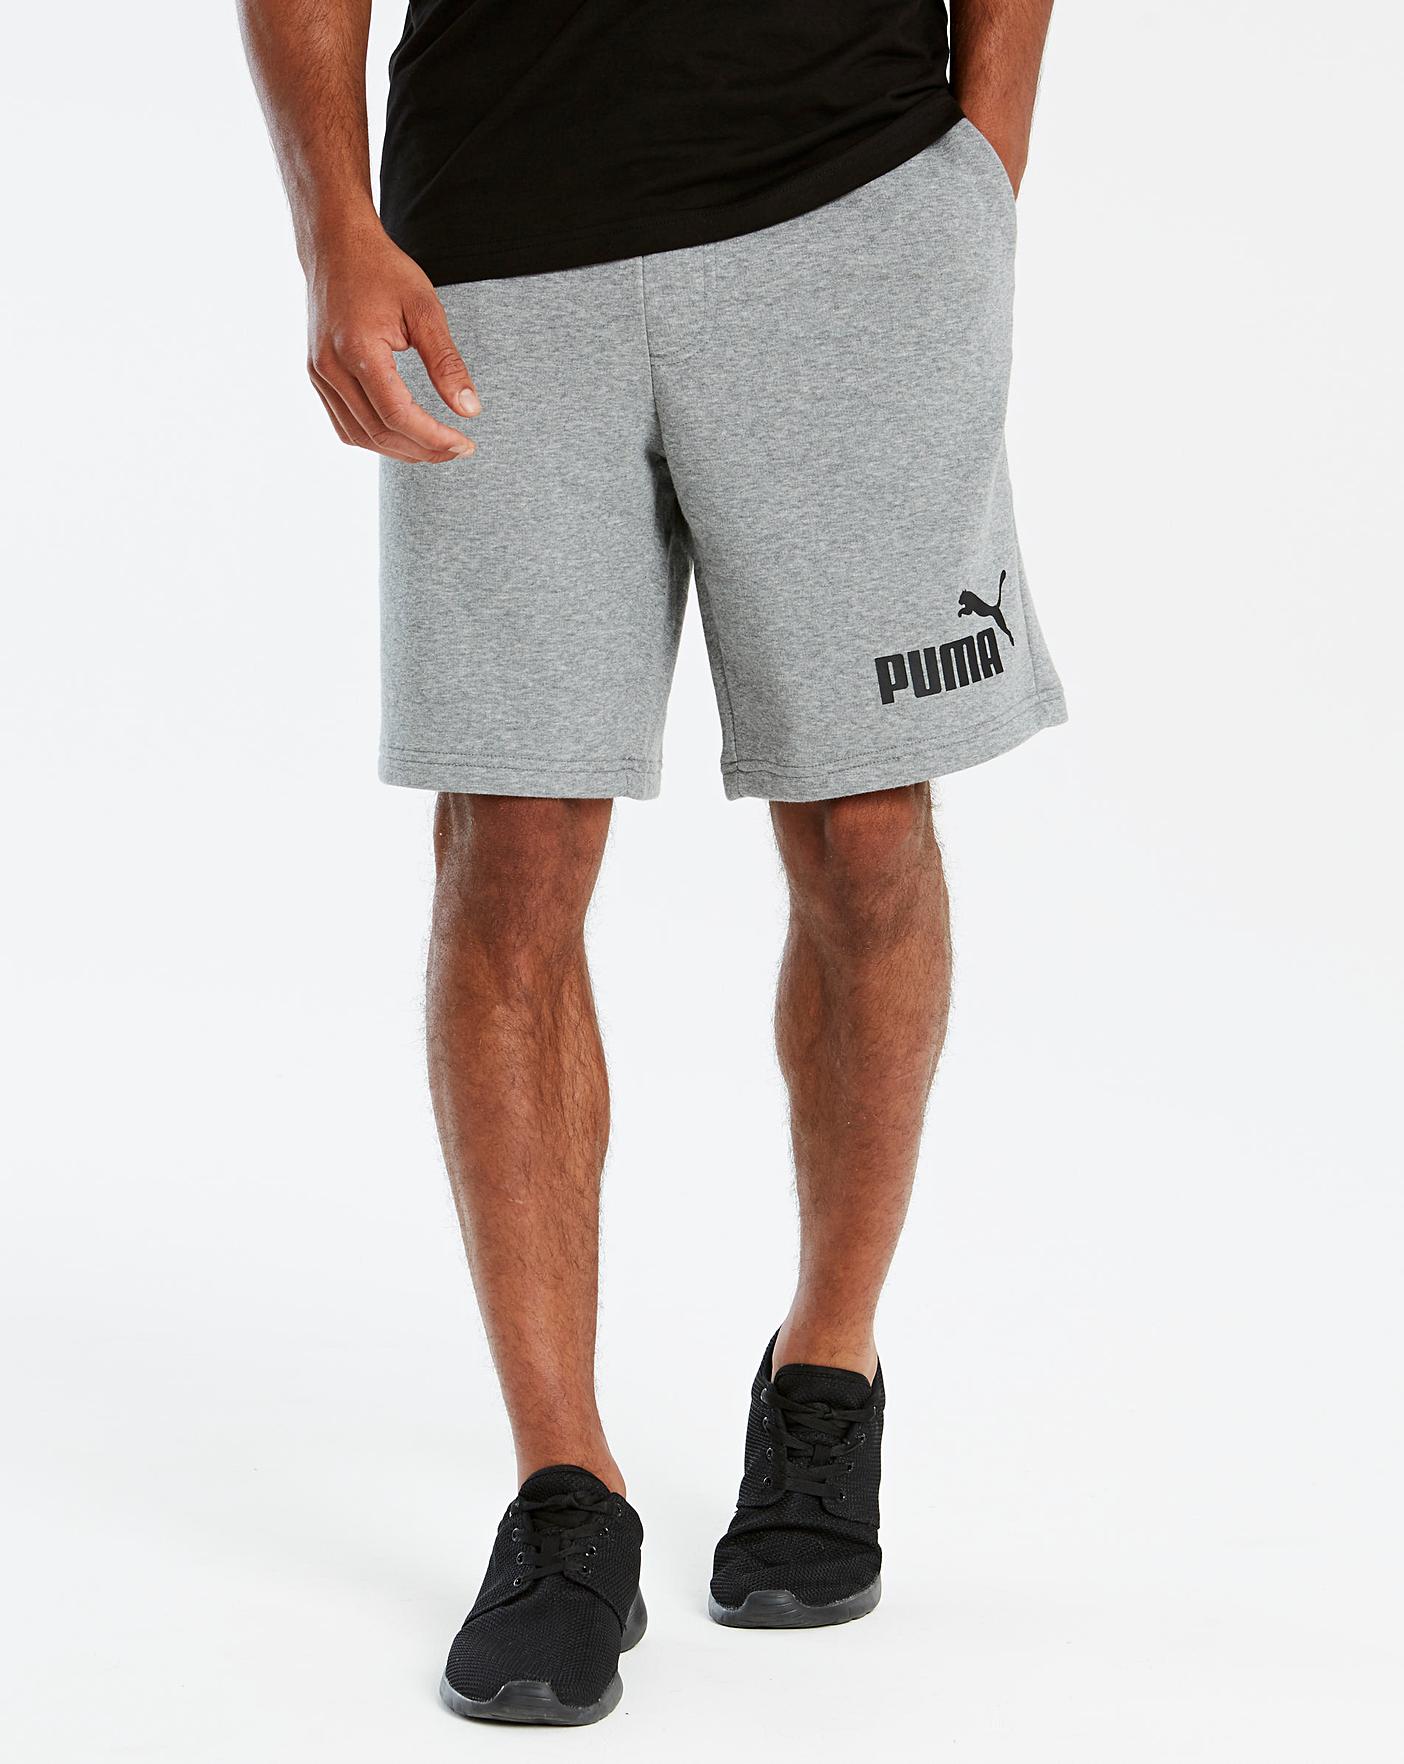 grey puma shorts